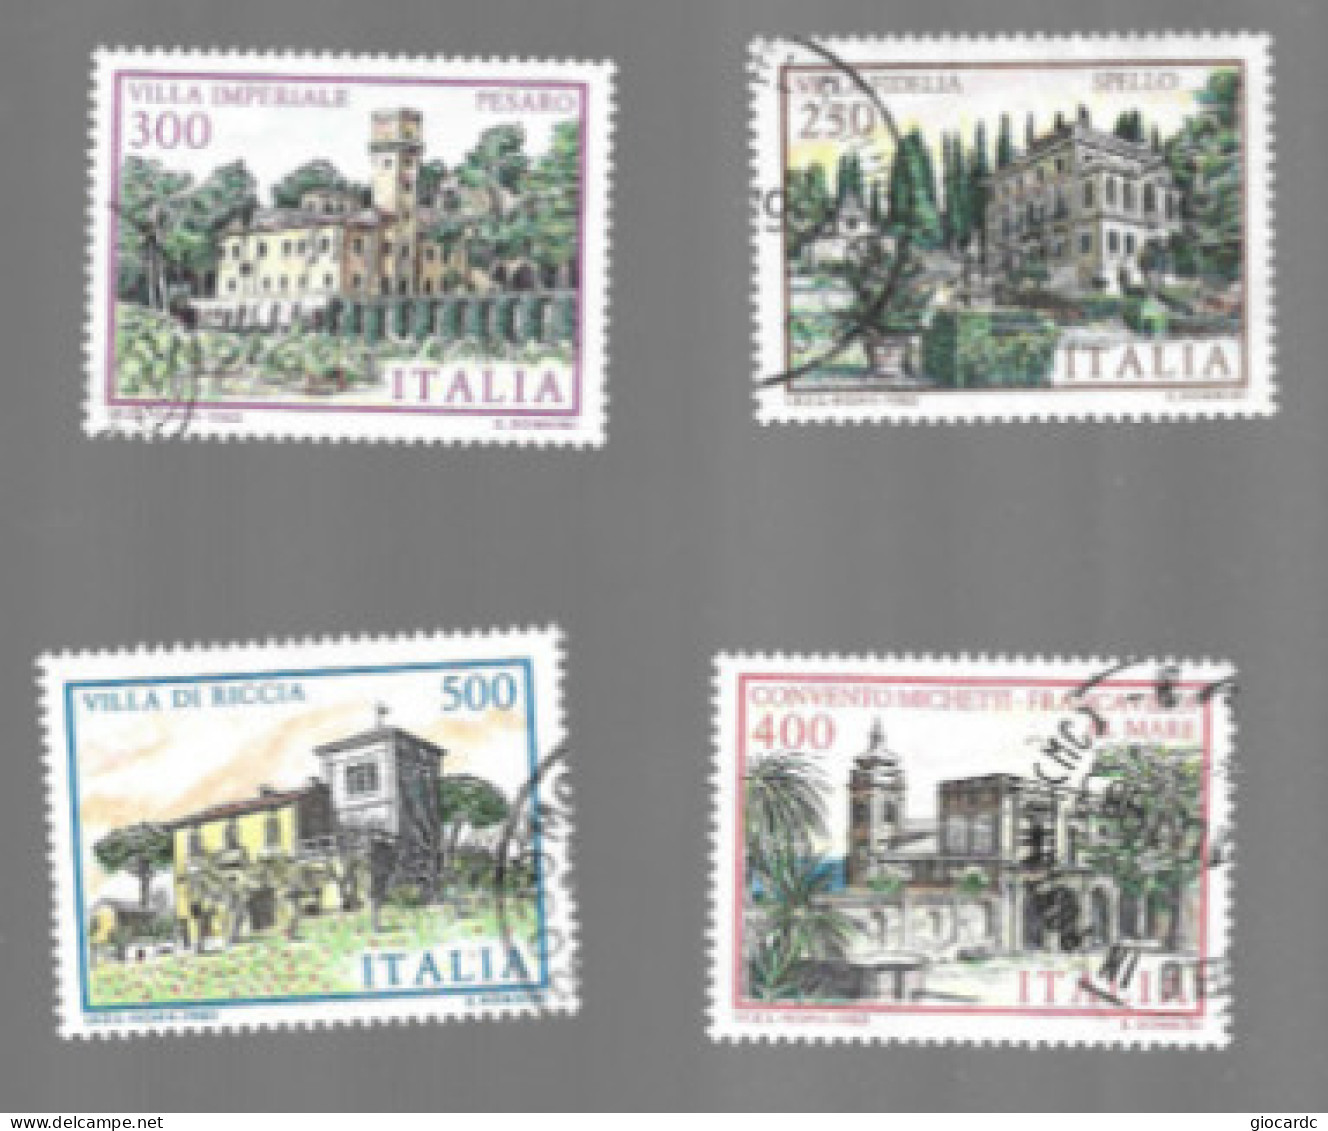 ITALIA REPUBBLICA  - SA 1651.1654  -      1983  VILLE D' ITALIA: COMPLET SET OF 4   -      USATO  RIF. 30901.02.03 - 1981-90: Usati